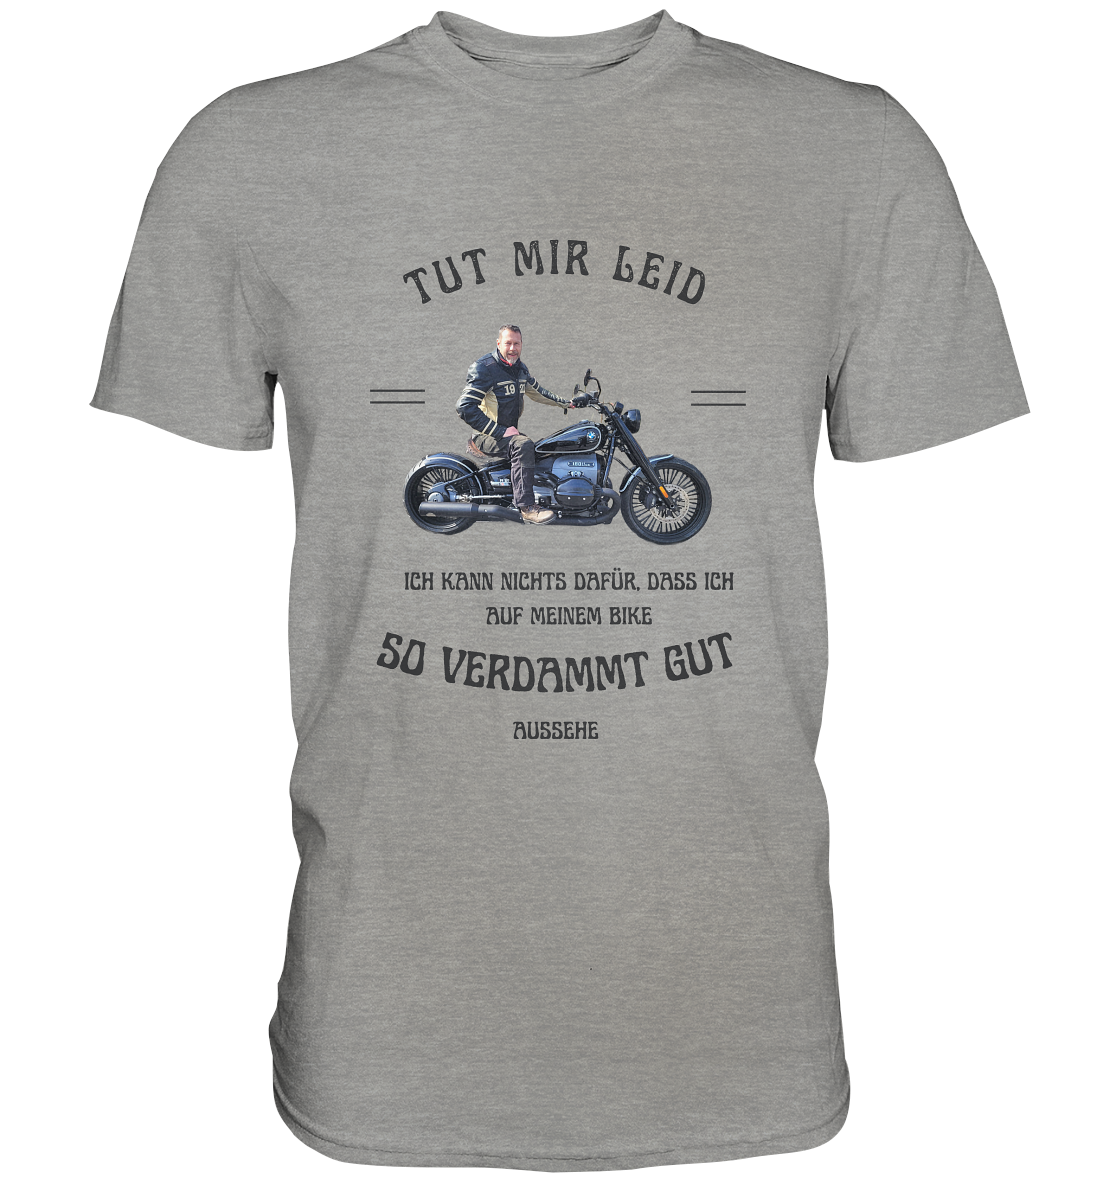 "Tut mir leid, ich kann nichts dafür, dass ich auf meinem Bike so verdammt gut aussehe" _ für Jürgen | individualisiertes Shirt mit personalisiertem Foto-Druck mit Motorrad-Spruch in dunklem Design